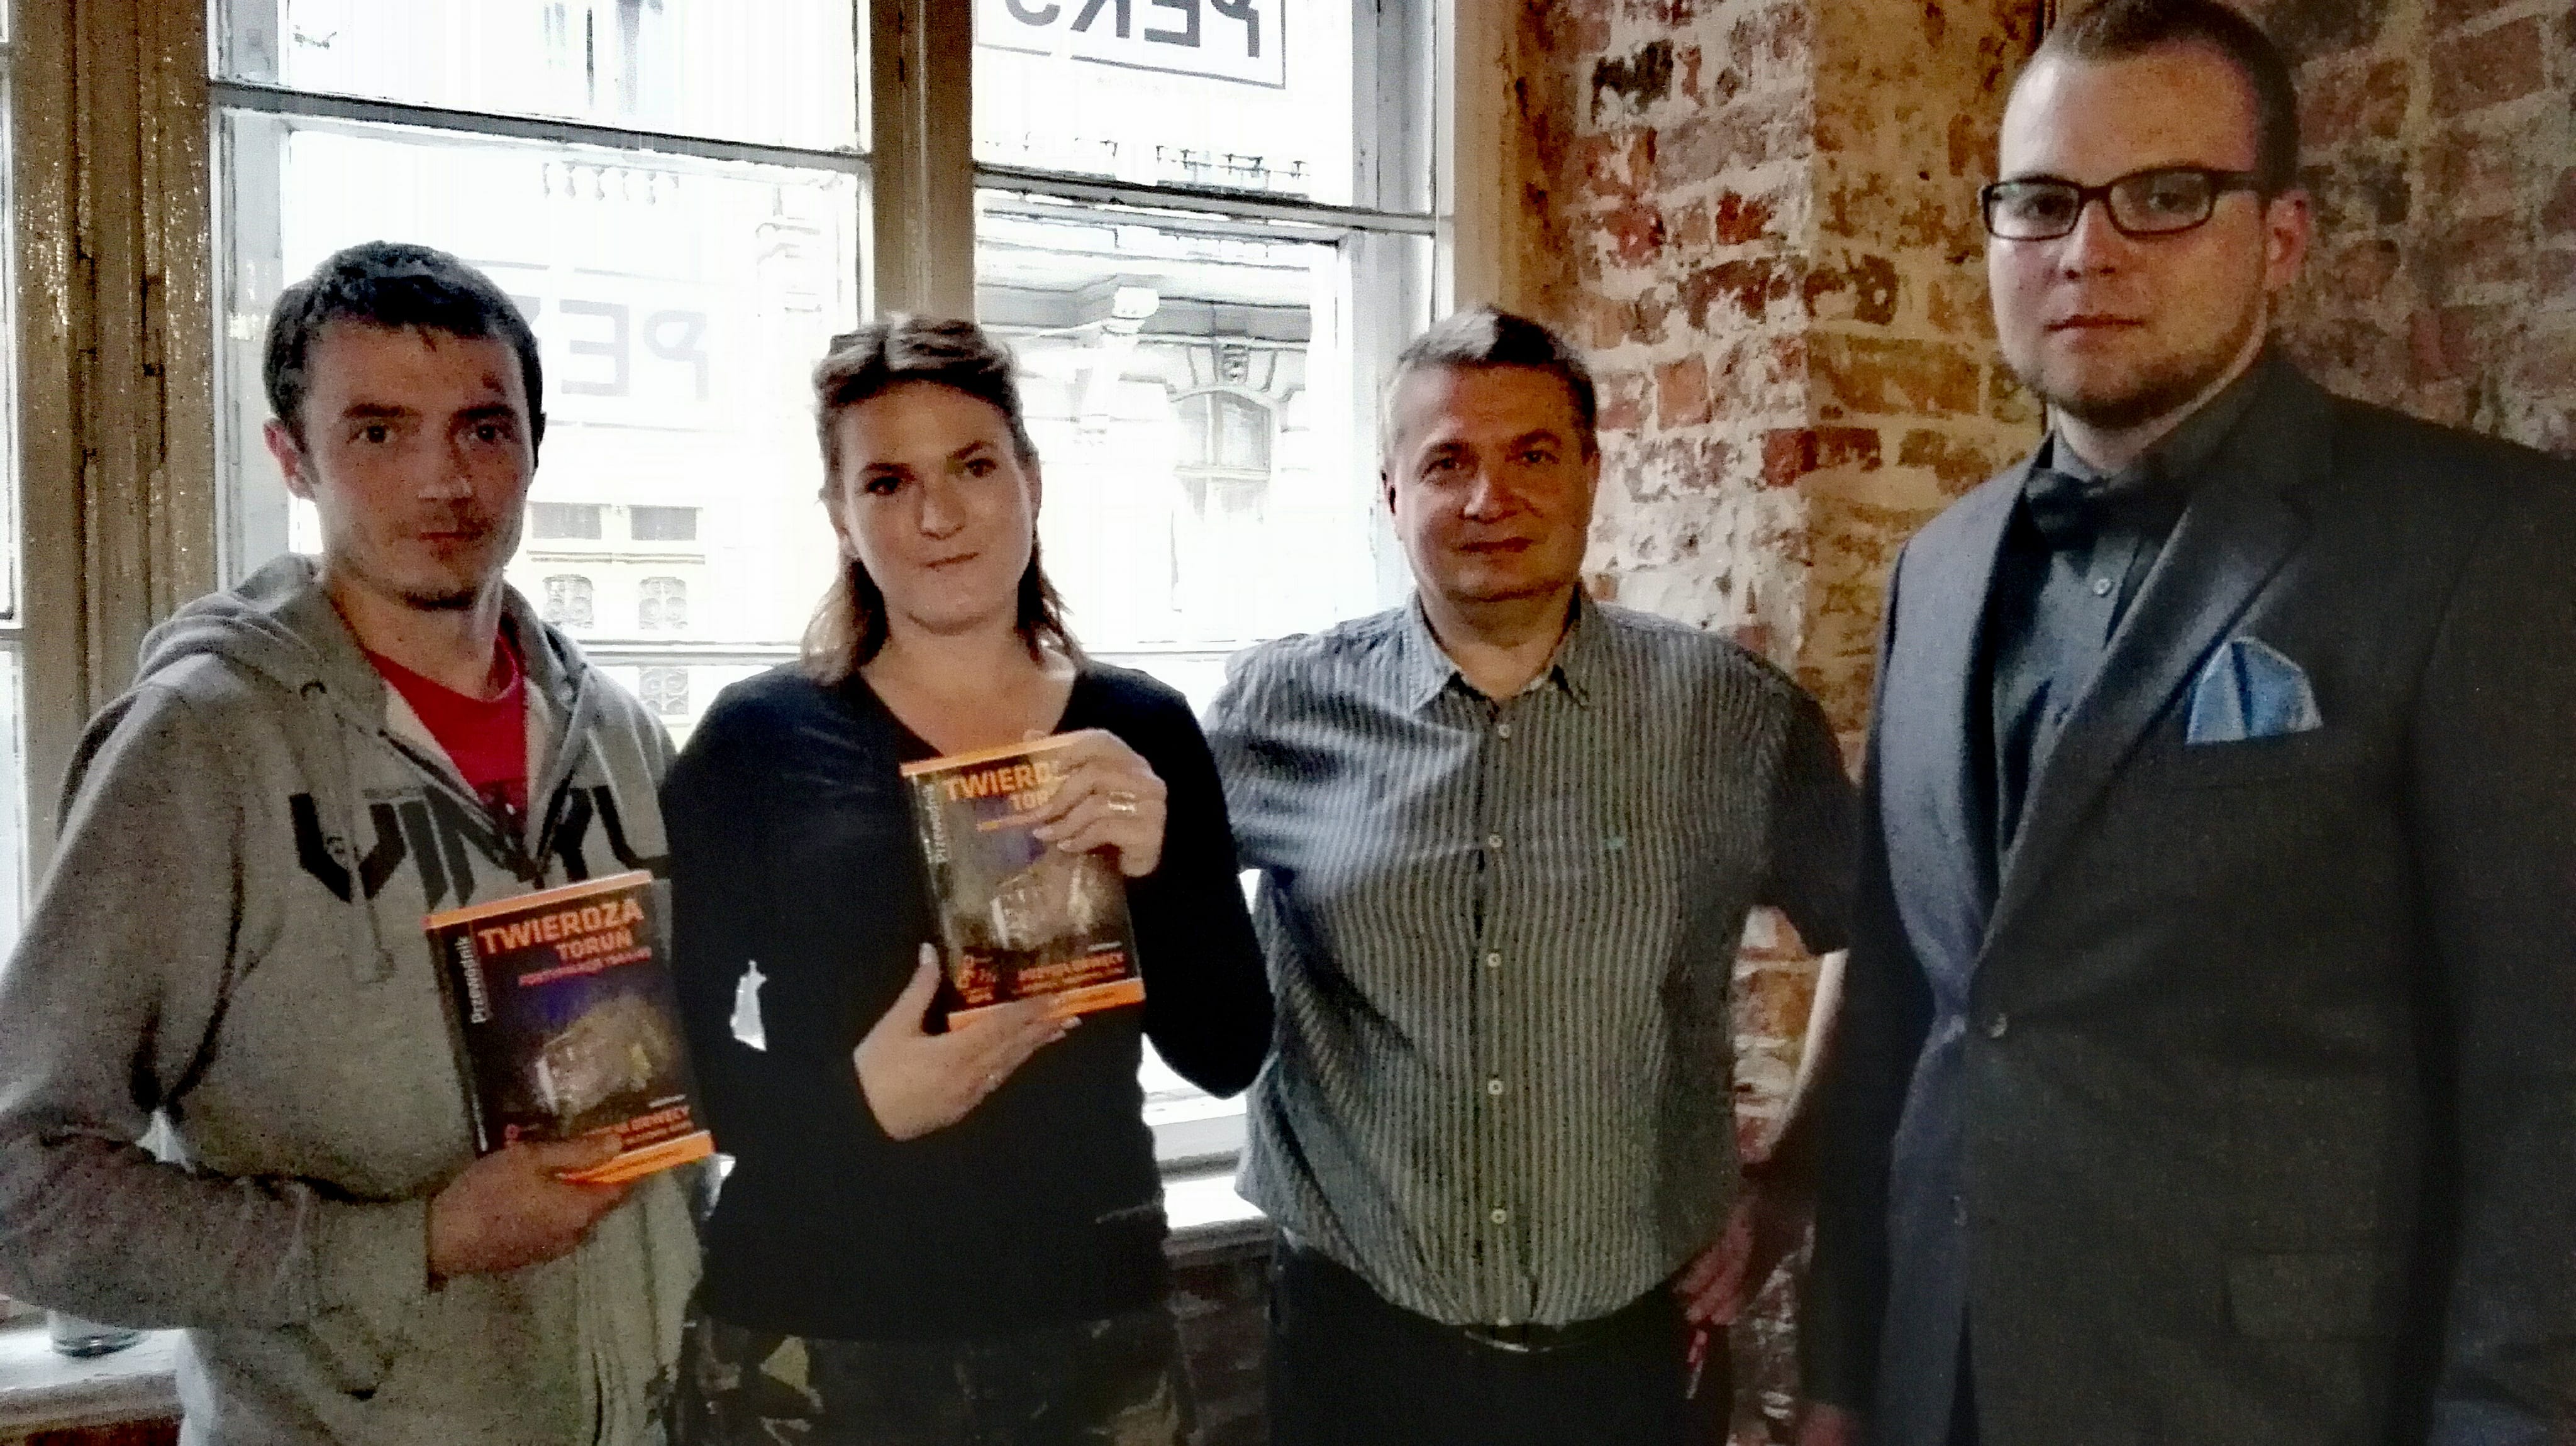 Zwycięzcy naszego konkursu wraz z autorami książki, fot. Zdzisław Wiśniewski